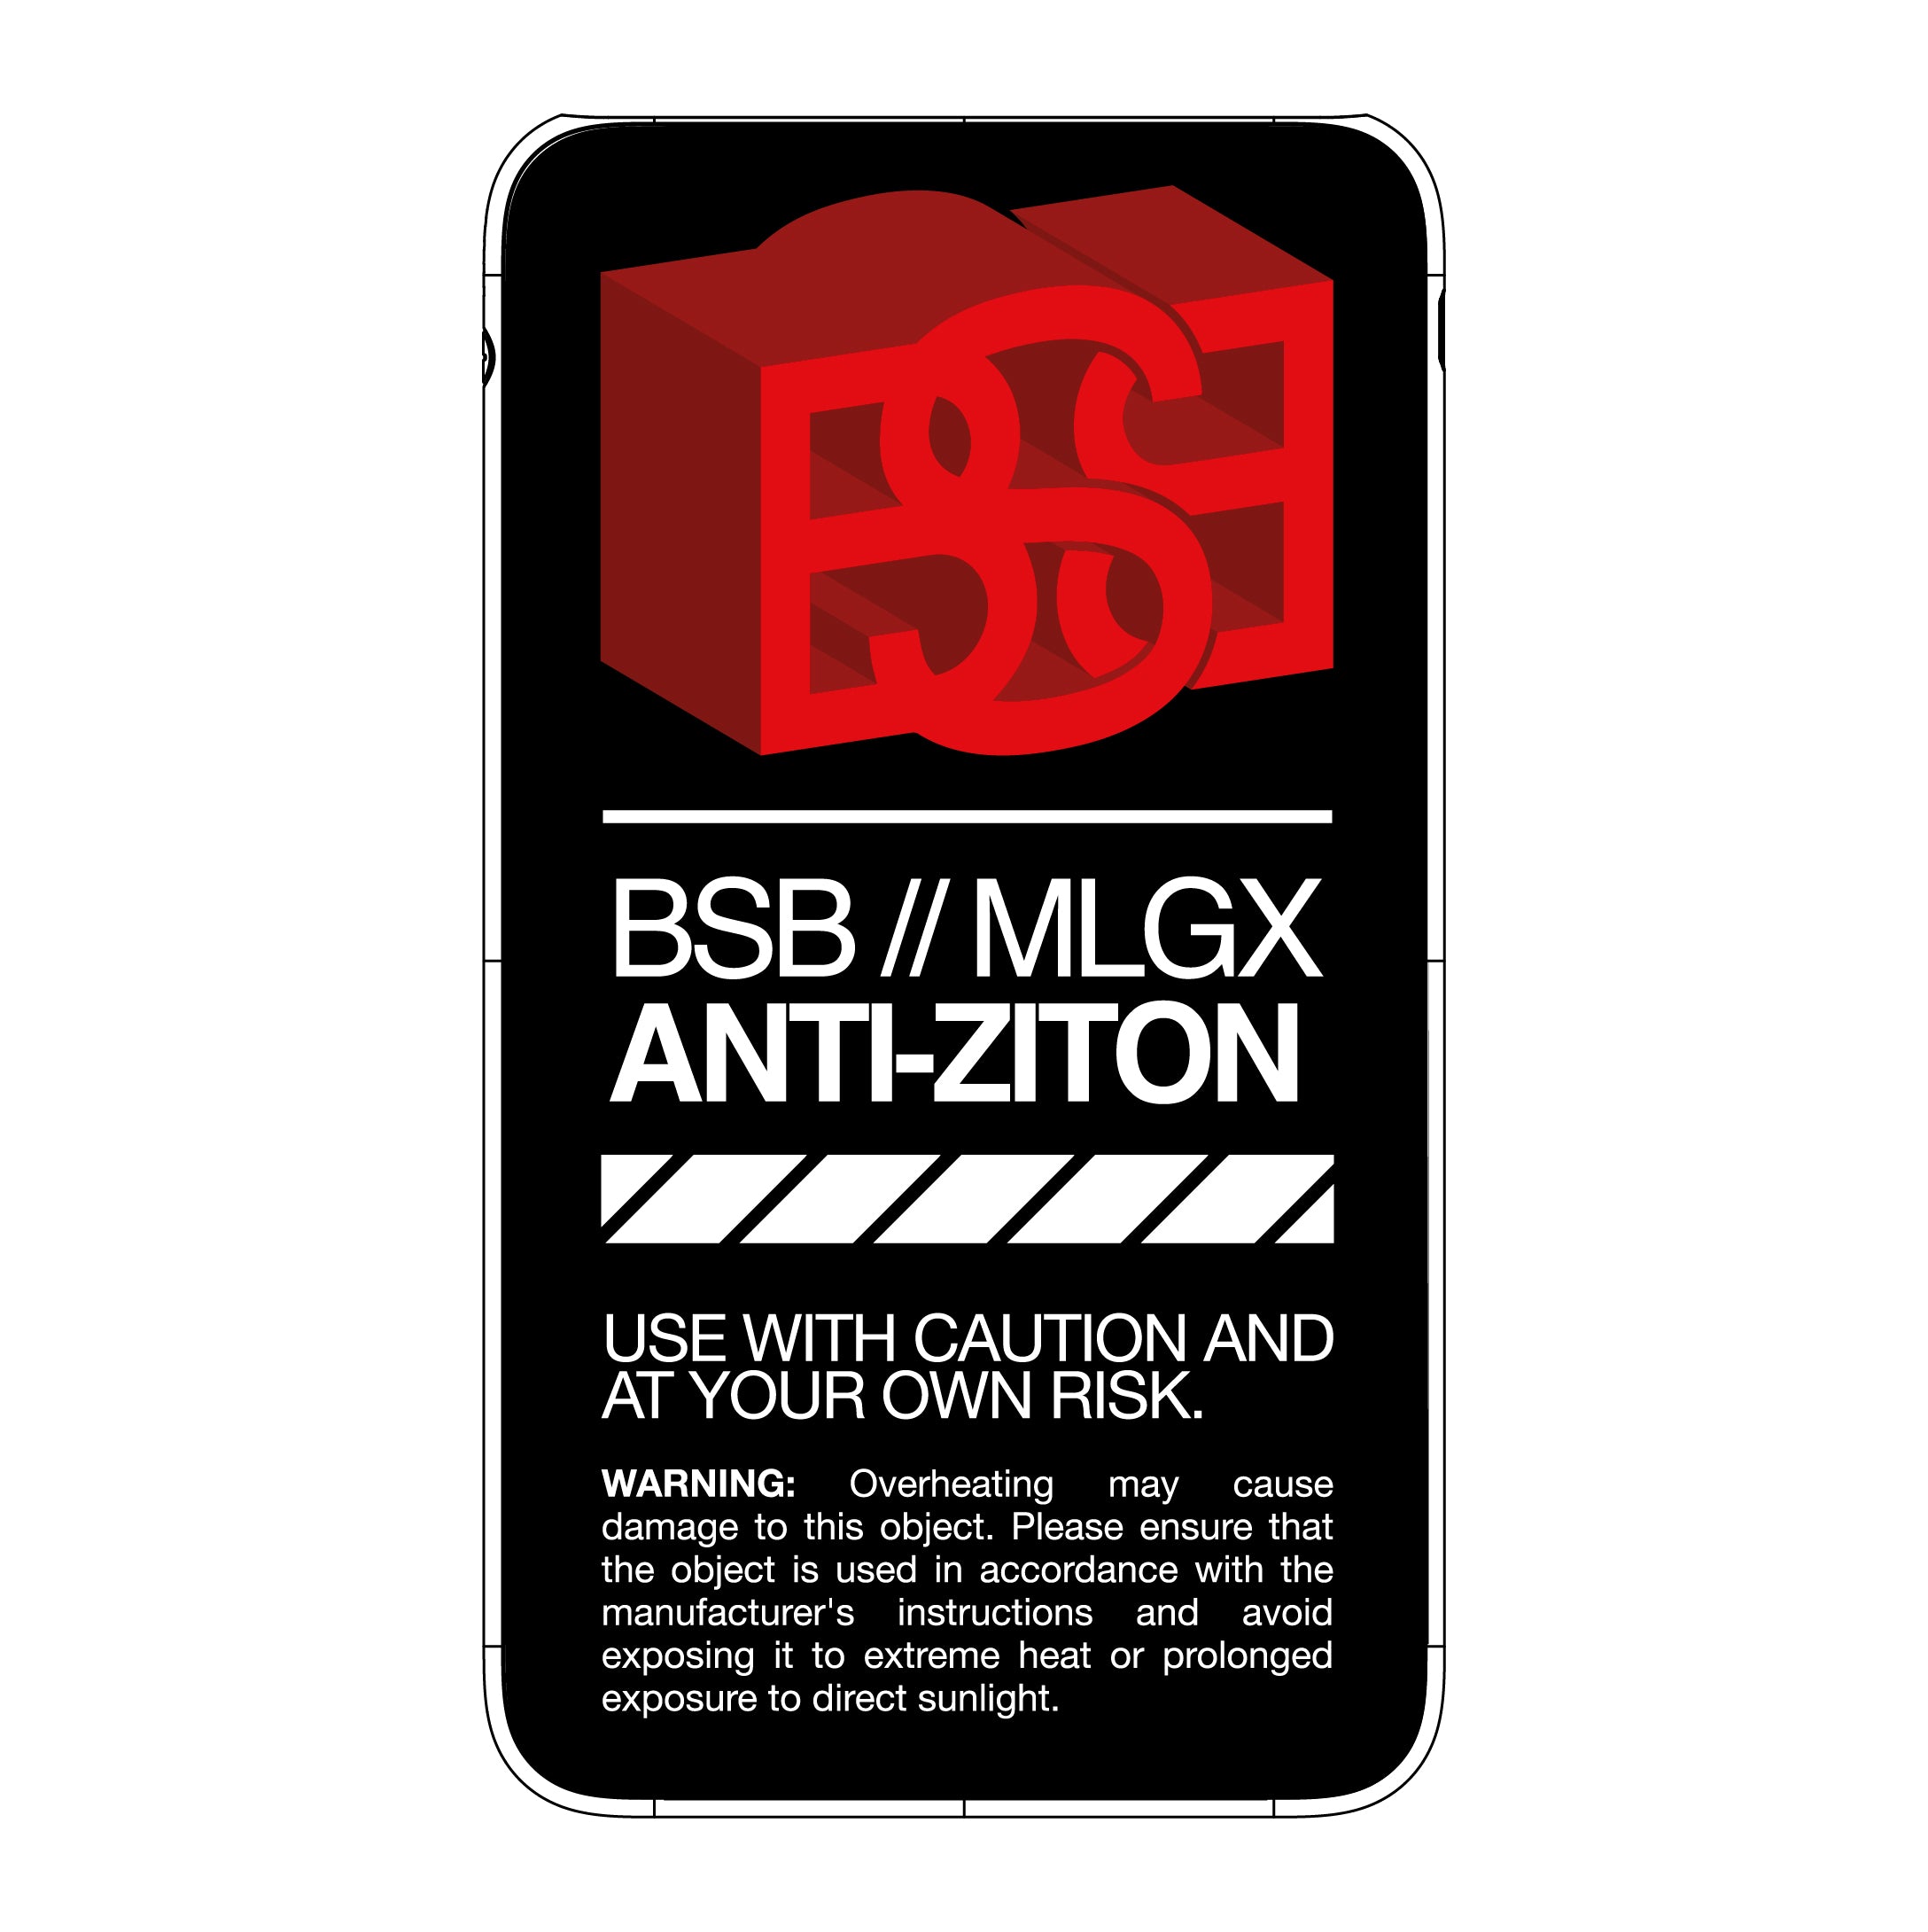 Batterie externe MANA x BSB 3D